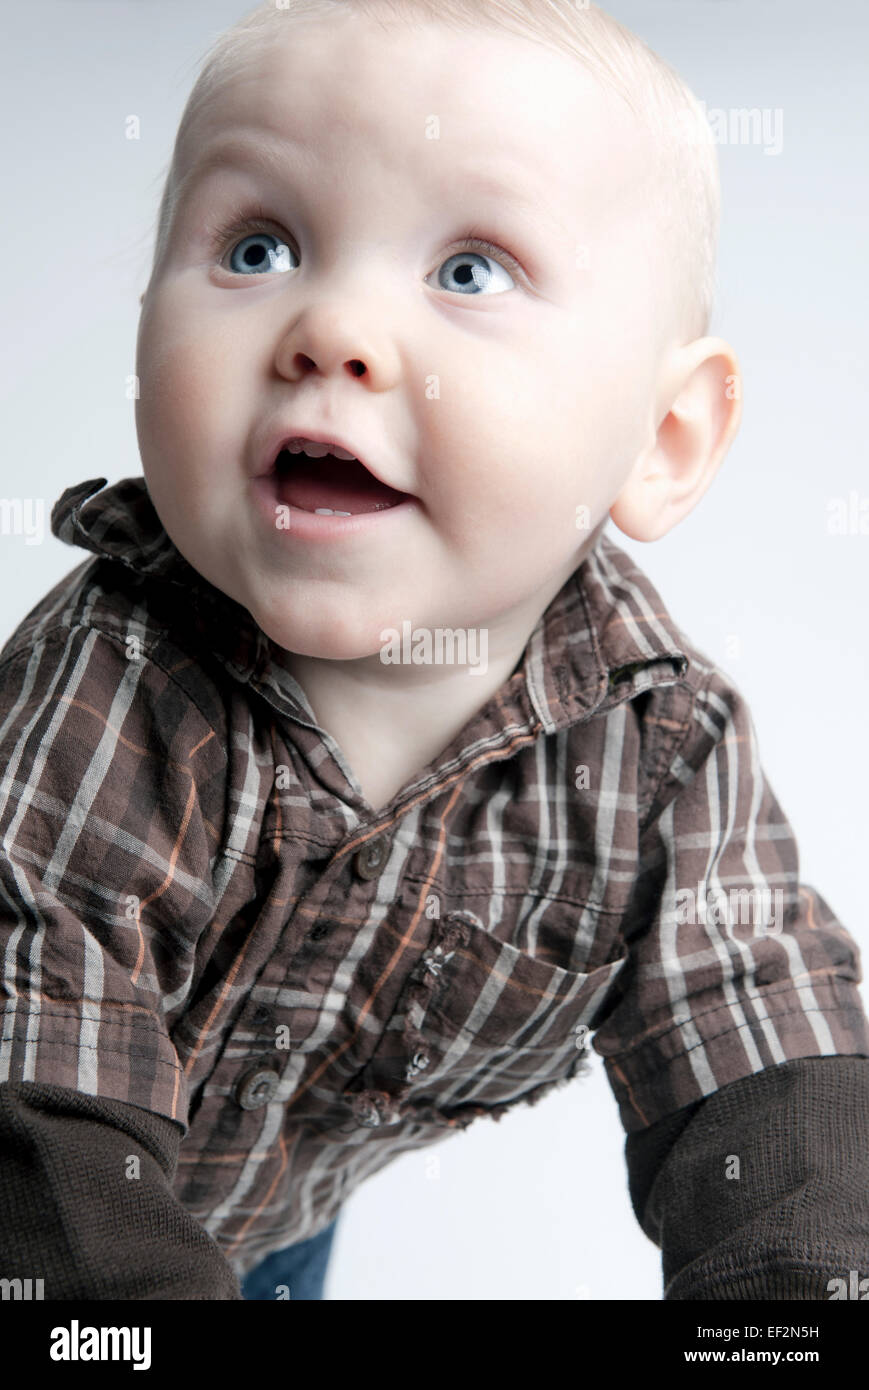 Neun Monate alten Baby jungen lächelnd und schaute nach oben. Stockfoto